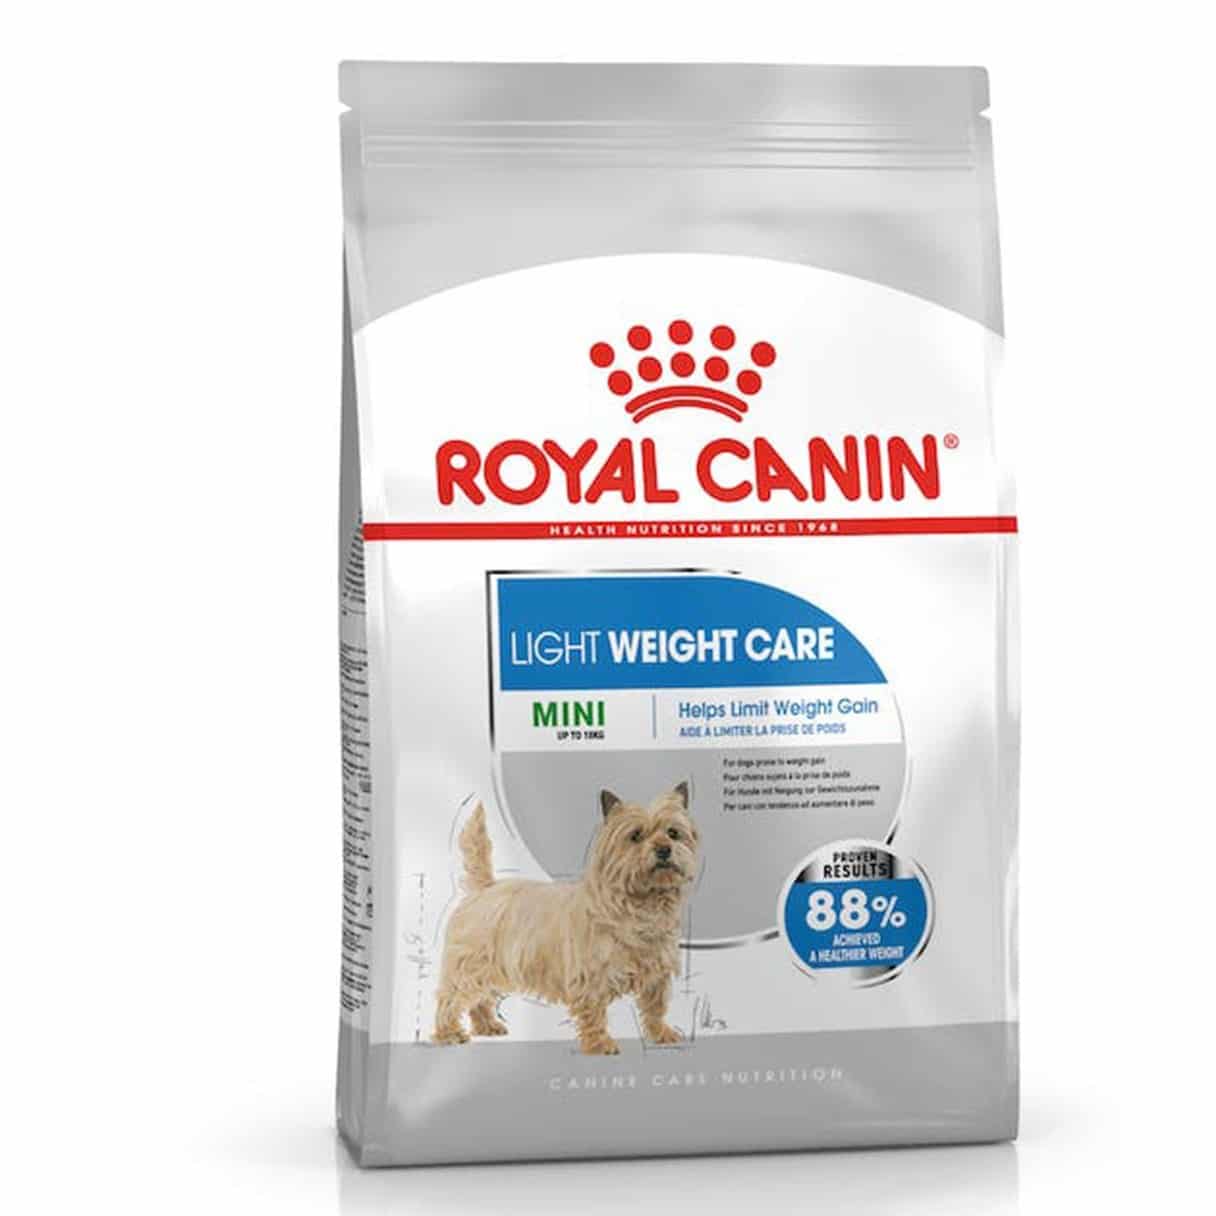 ØºØ°Ø§ÛŒ Ø®Ø´Ú© Ø³Ú¯ Ù„Ø§ÛŒØª ÙˆÛŒØª Ø±ÙˆÛŒØ§Ù„ Ú©Ù†ÛŒÙ† 3 Ú©ÛŒÙ„ÙˆÛŒÛŒ (Ù†Ú˜Ø§Ø¯ Ú©ÙˆÚ†Ú©) Ø§ Royal Canin Mini Light Weight Care 3kg